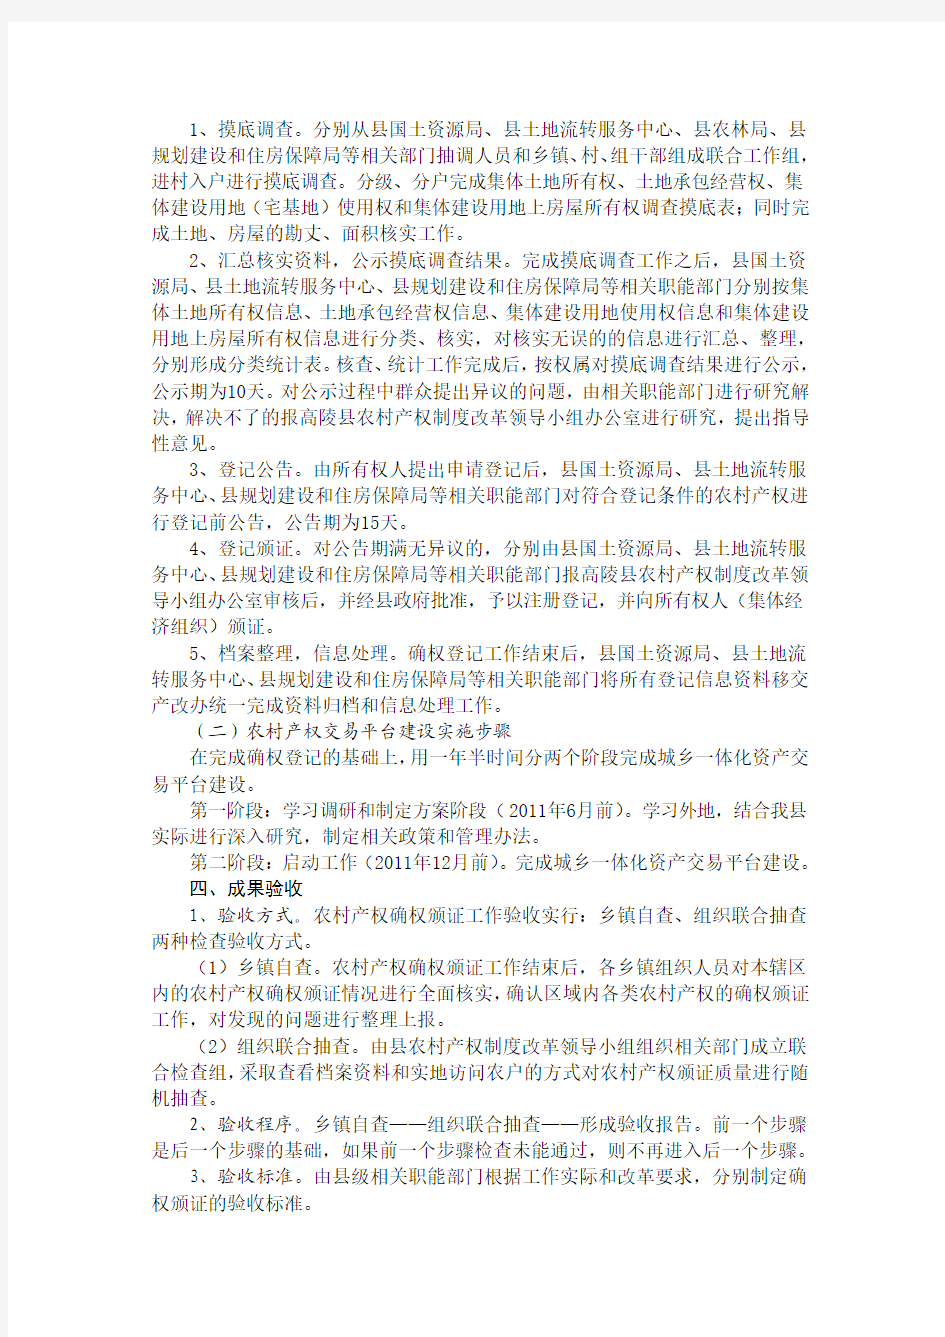 高陵县农村产权制度改革实施方案